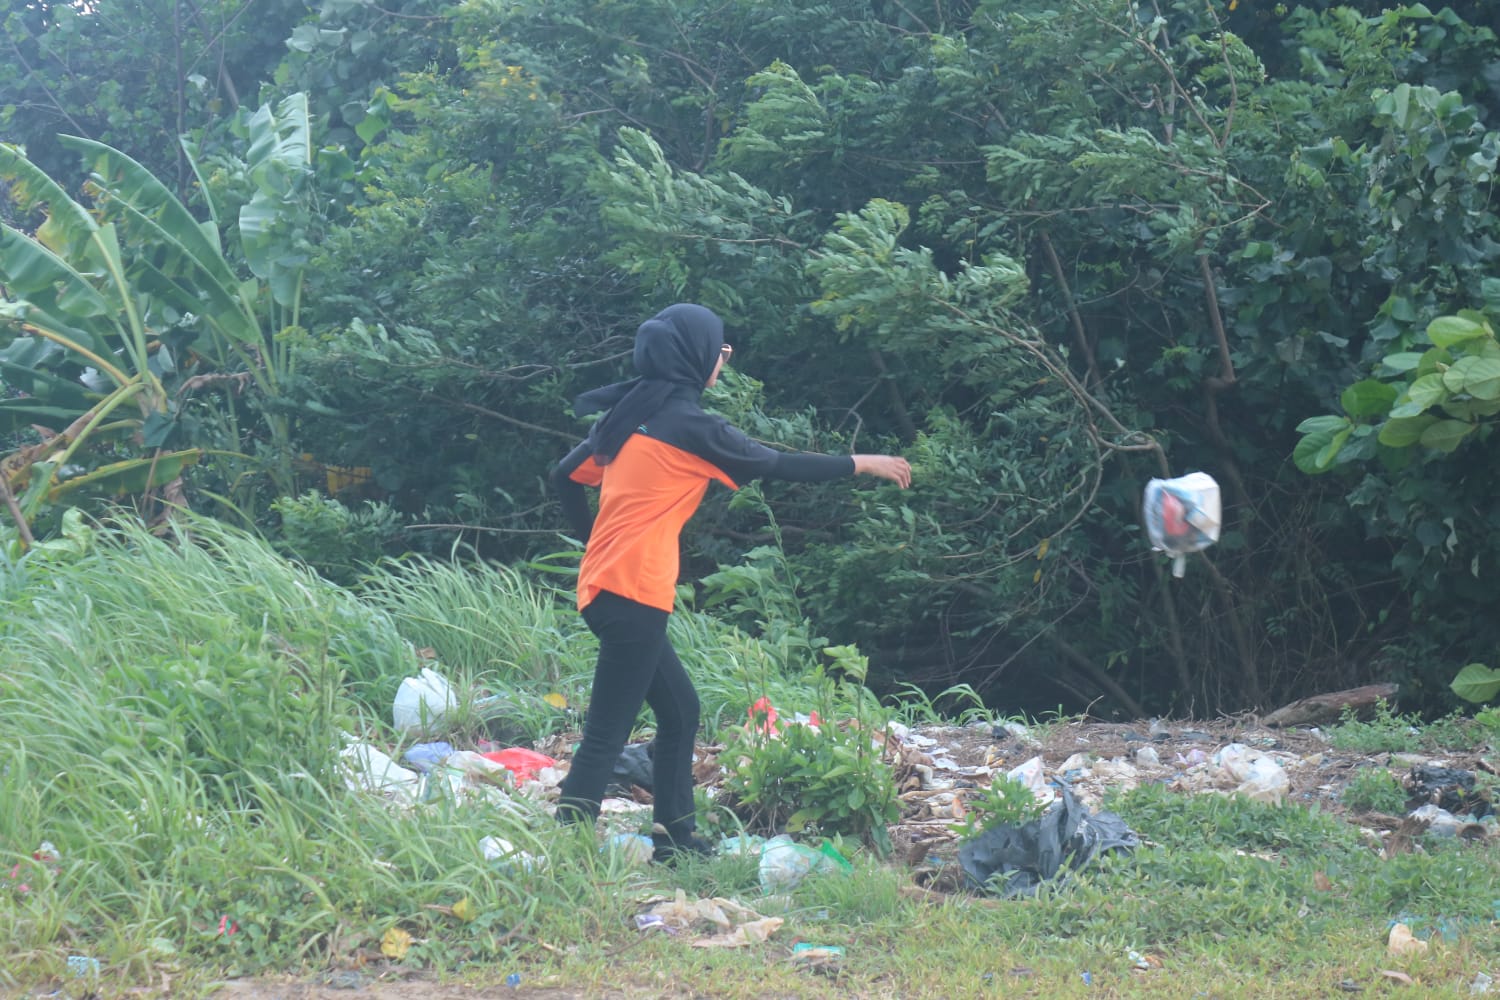 Berserak tumpukan sampah bercampur kepingan kayu dan bambu dibeberapa titik lokasi disekitaran pantai Jakat Bengkulu.